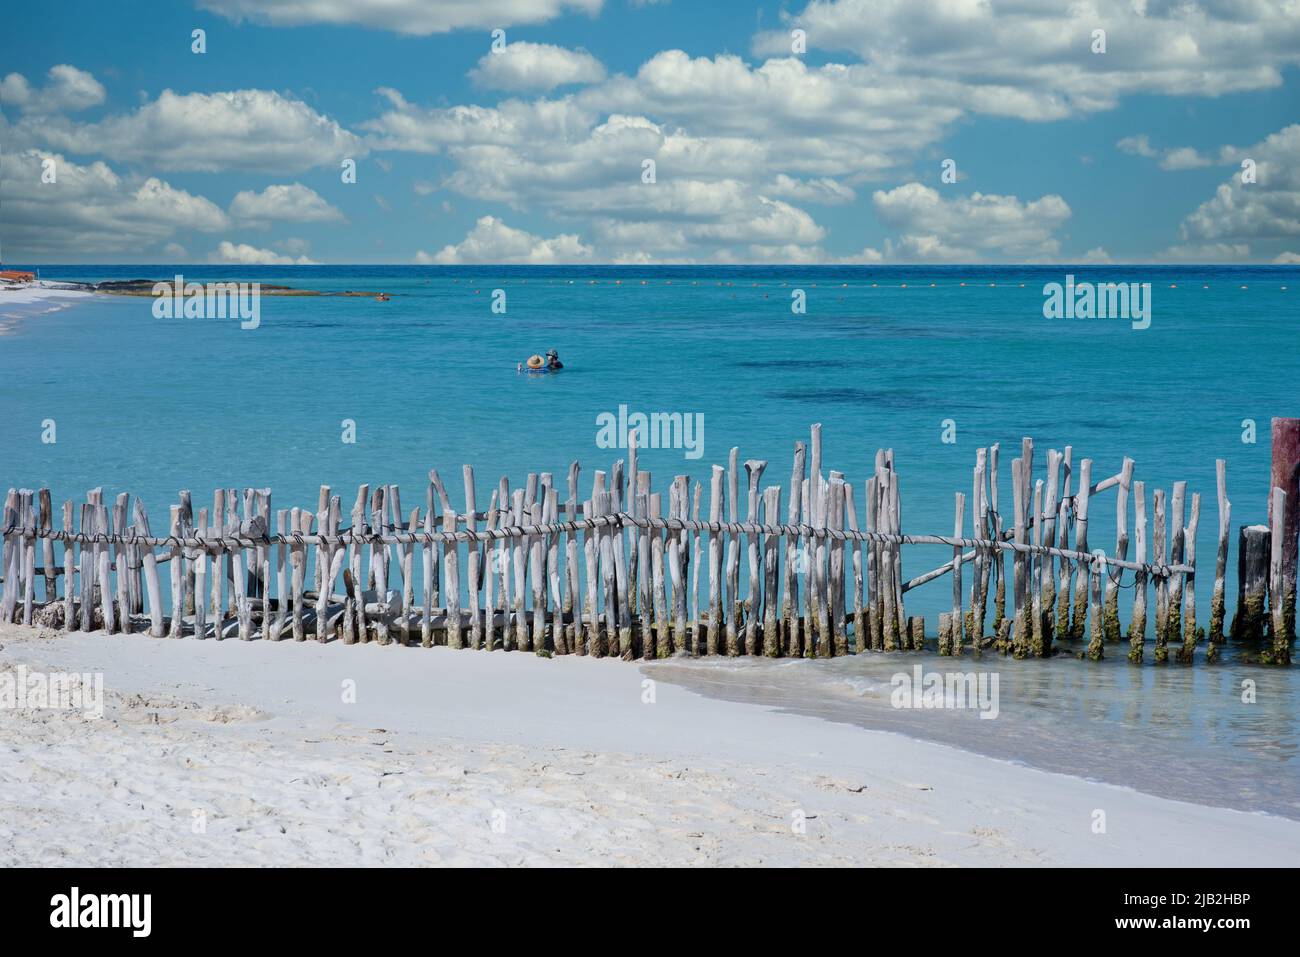 Presa con postes de madera en una playa tropical en México. Isla Mujeres Foto de stock